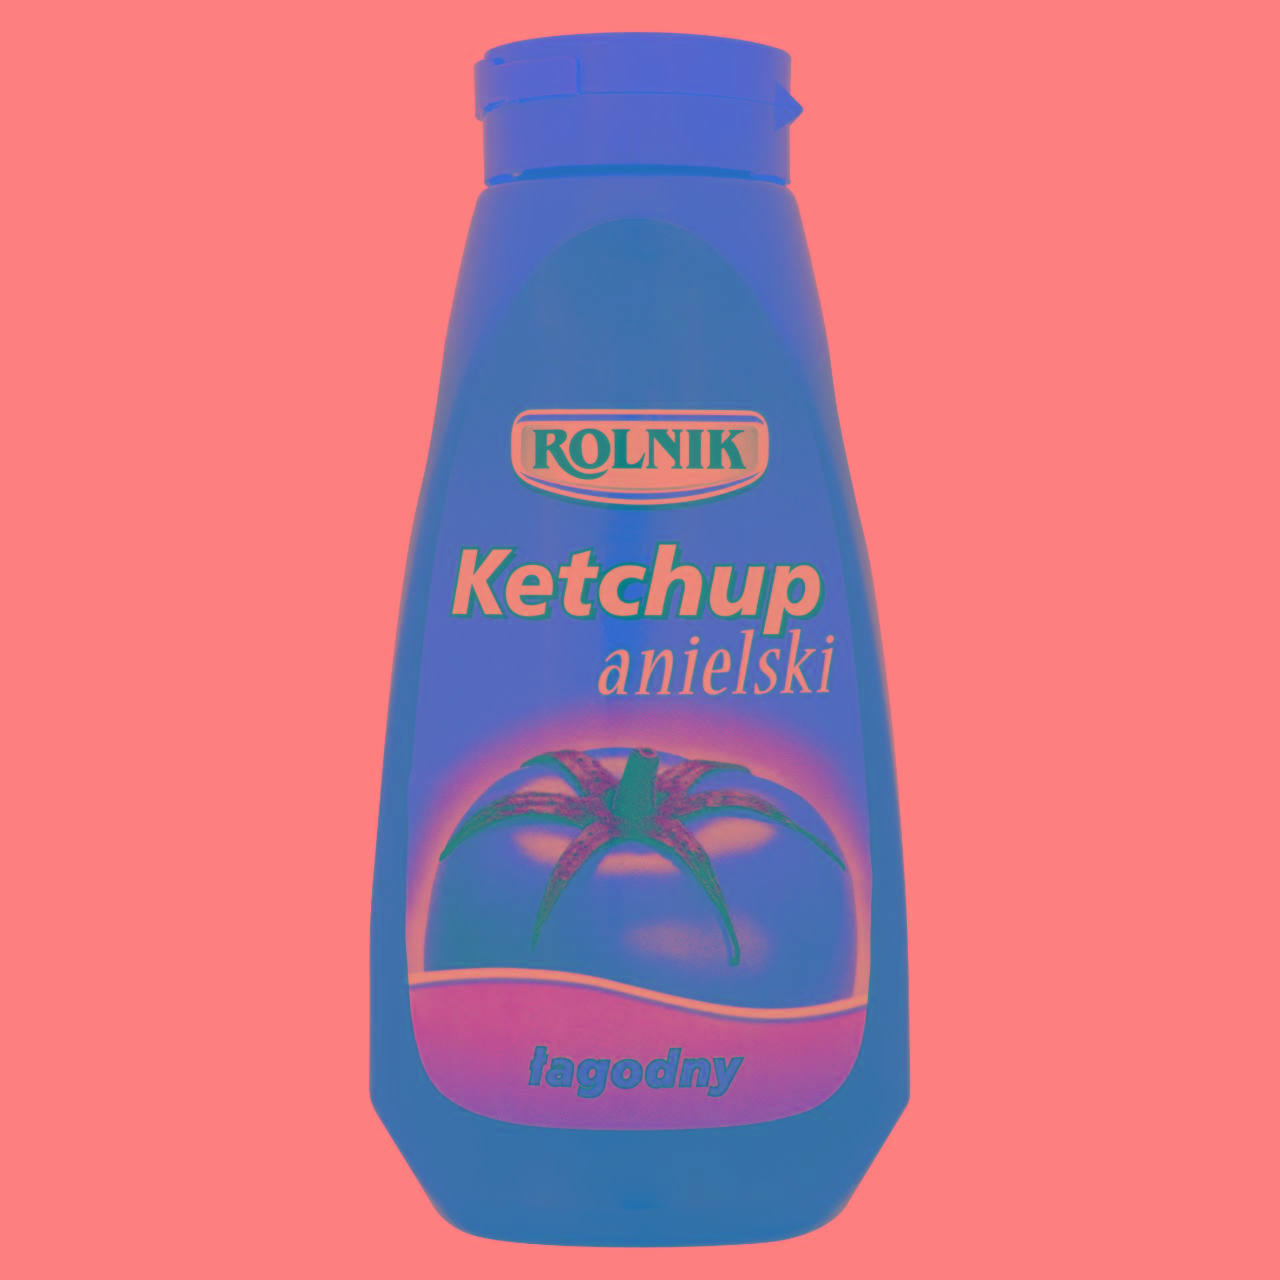 Zdjęcia - Rolnik Ketchup anielski łagodny 500 g